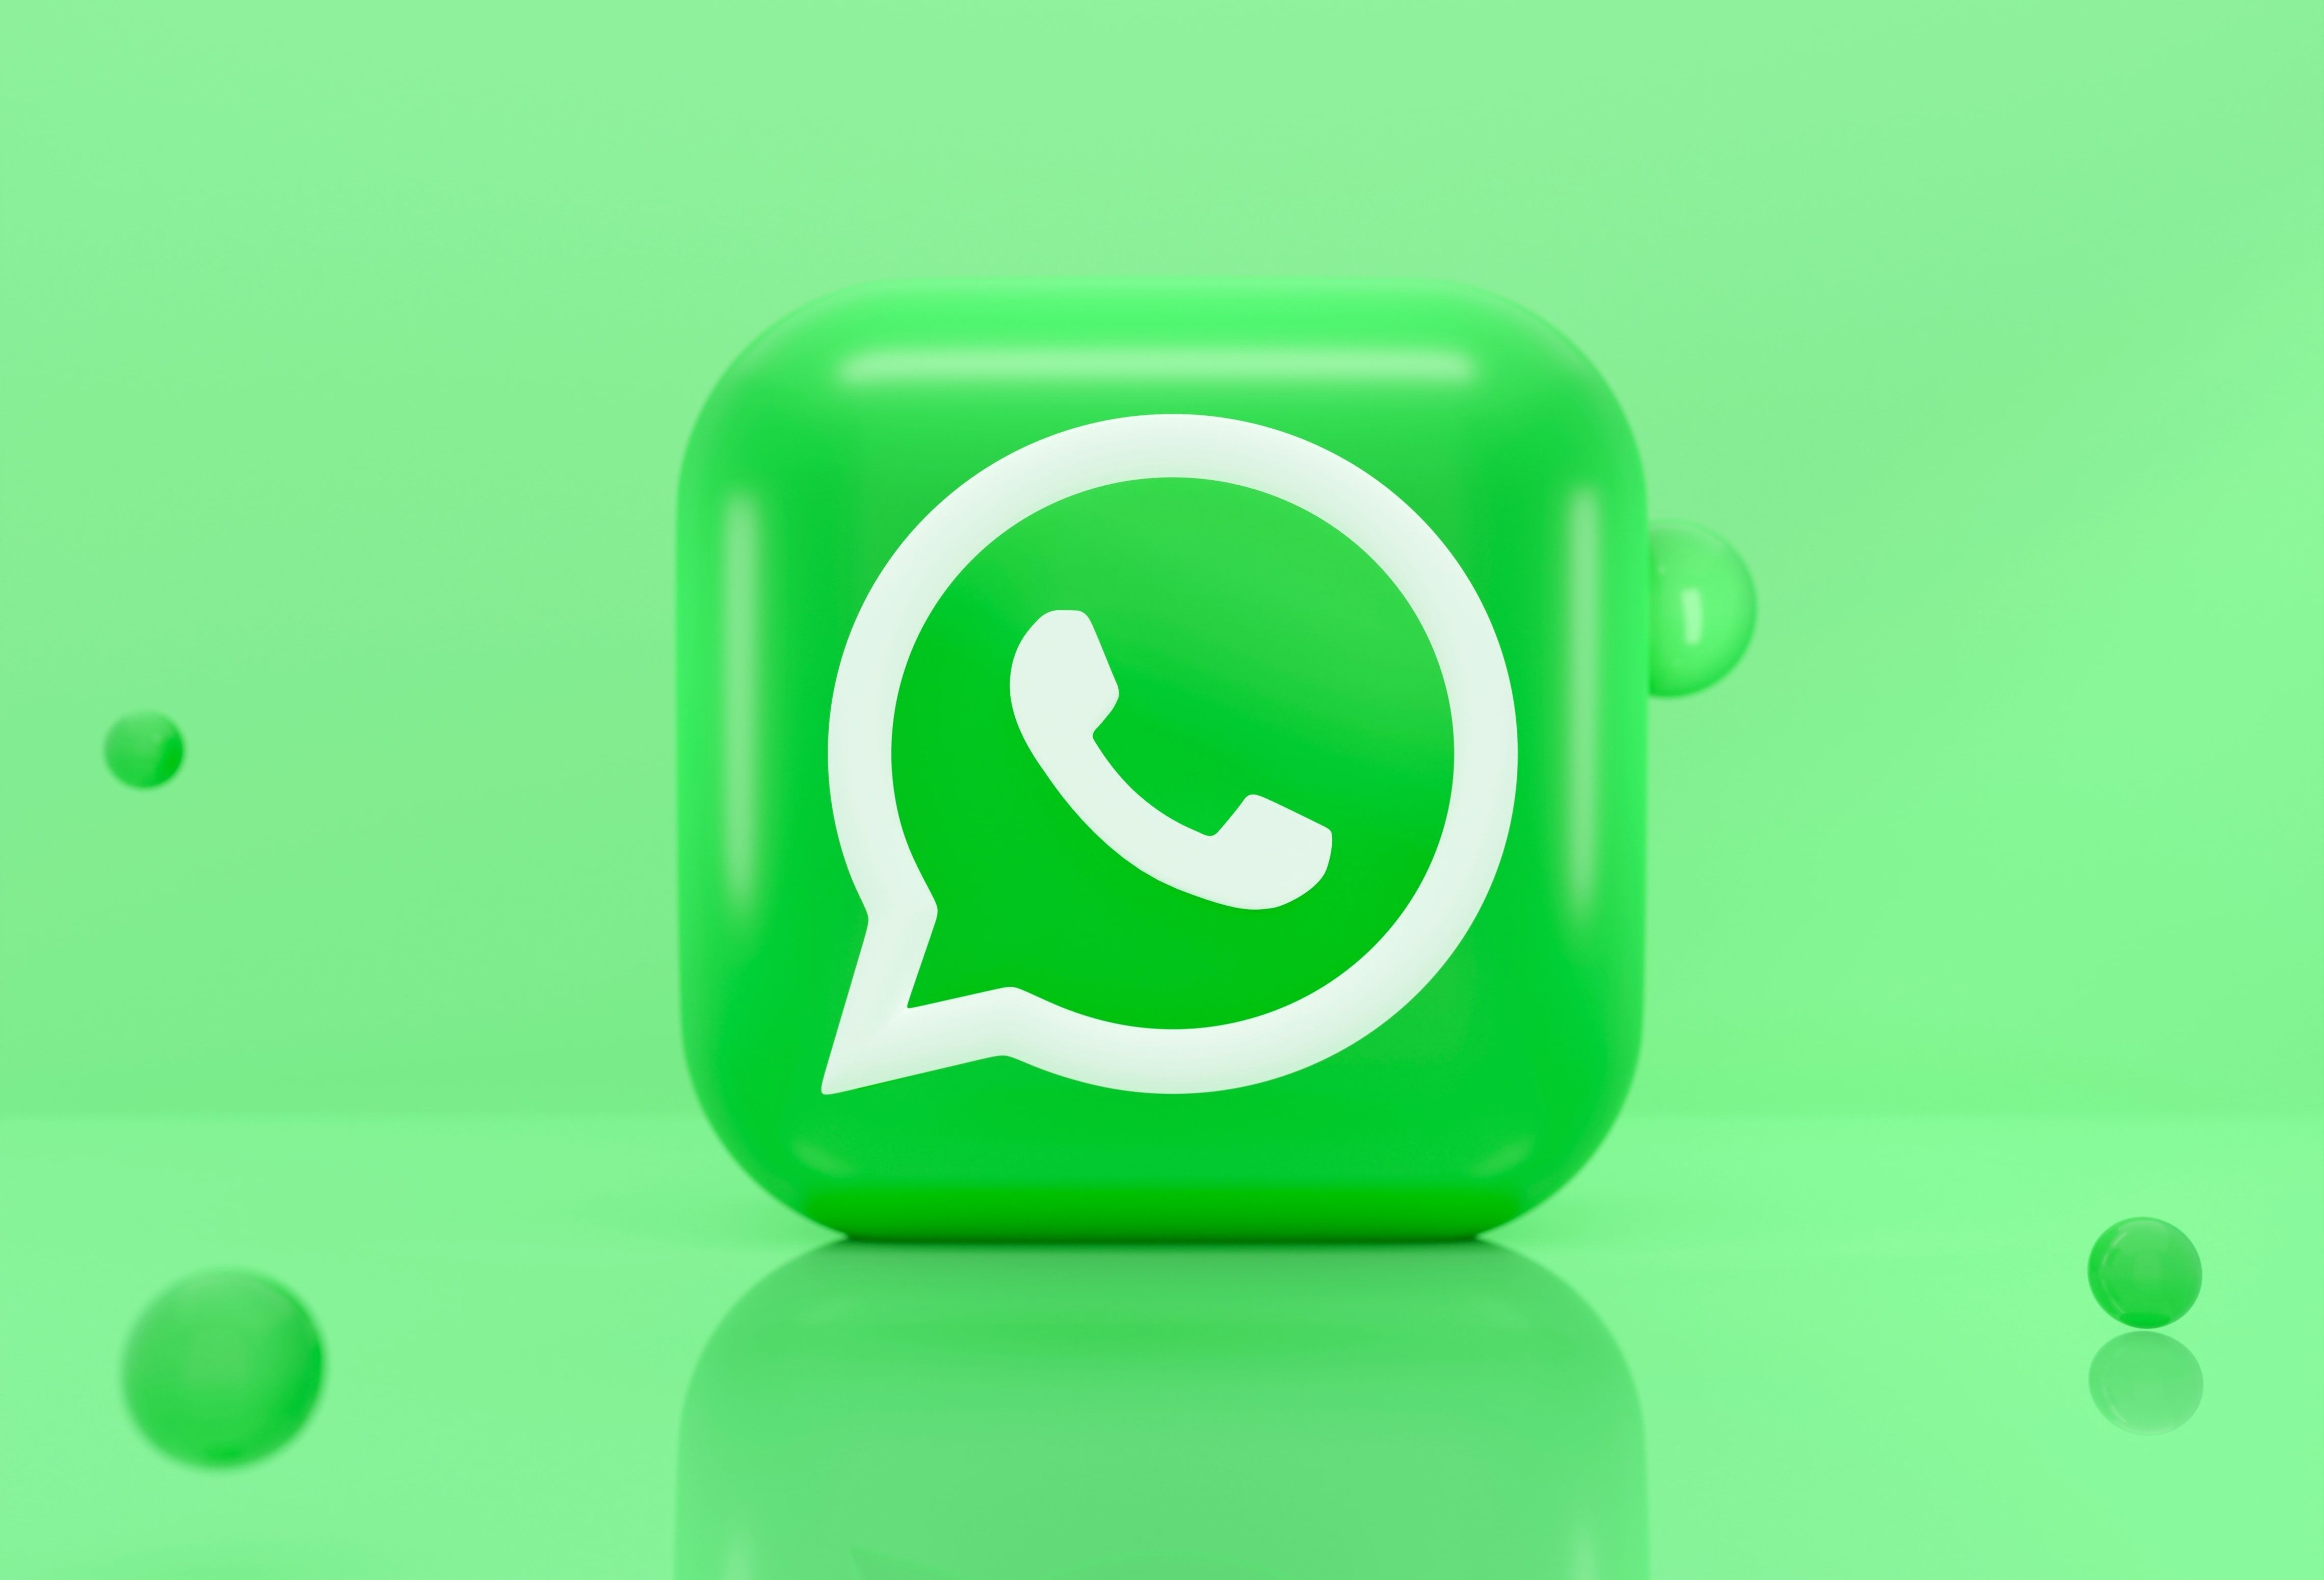 O logotipo frontal do WhatsApp é exibido em um cubo verde tridimensional sobre um fundo verde sólido.  Bolhas verdes escuras adicionam interesse visual à imagem.